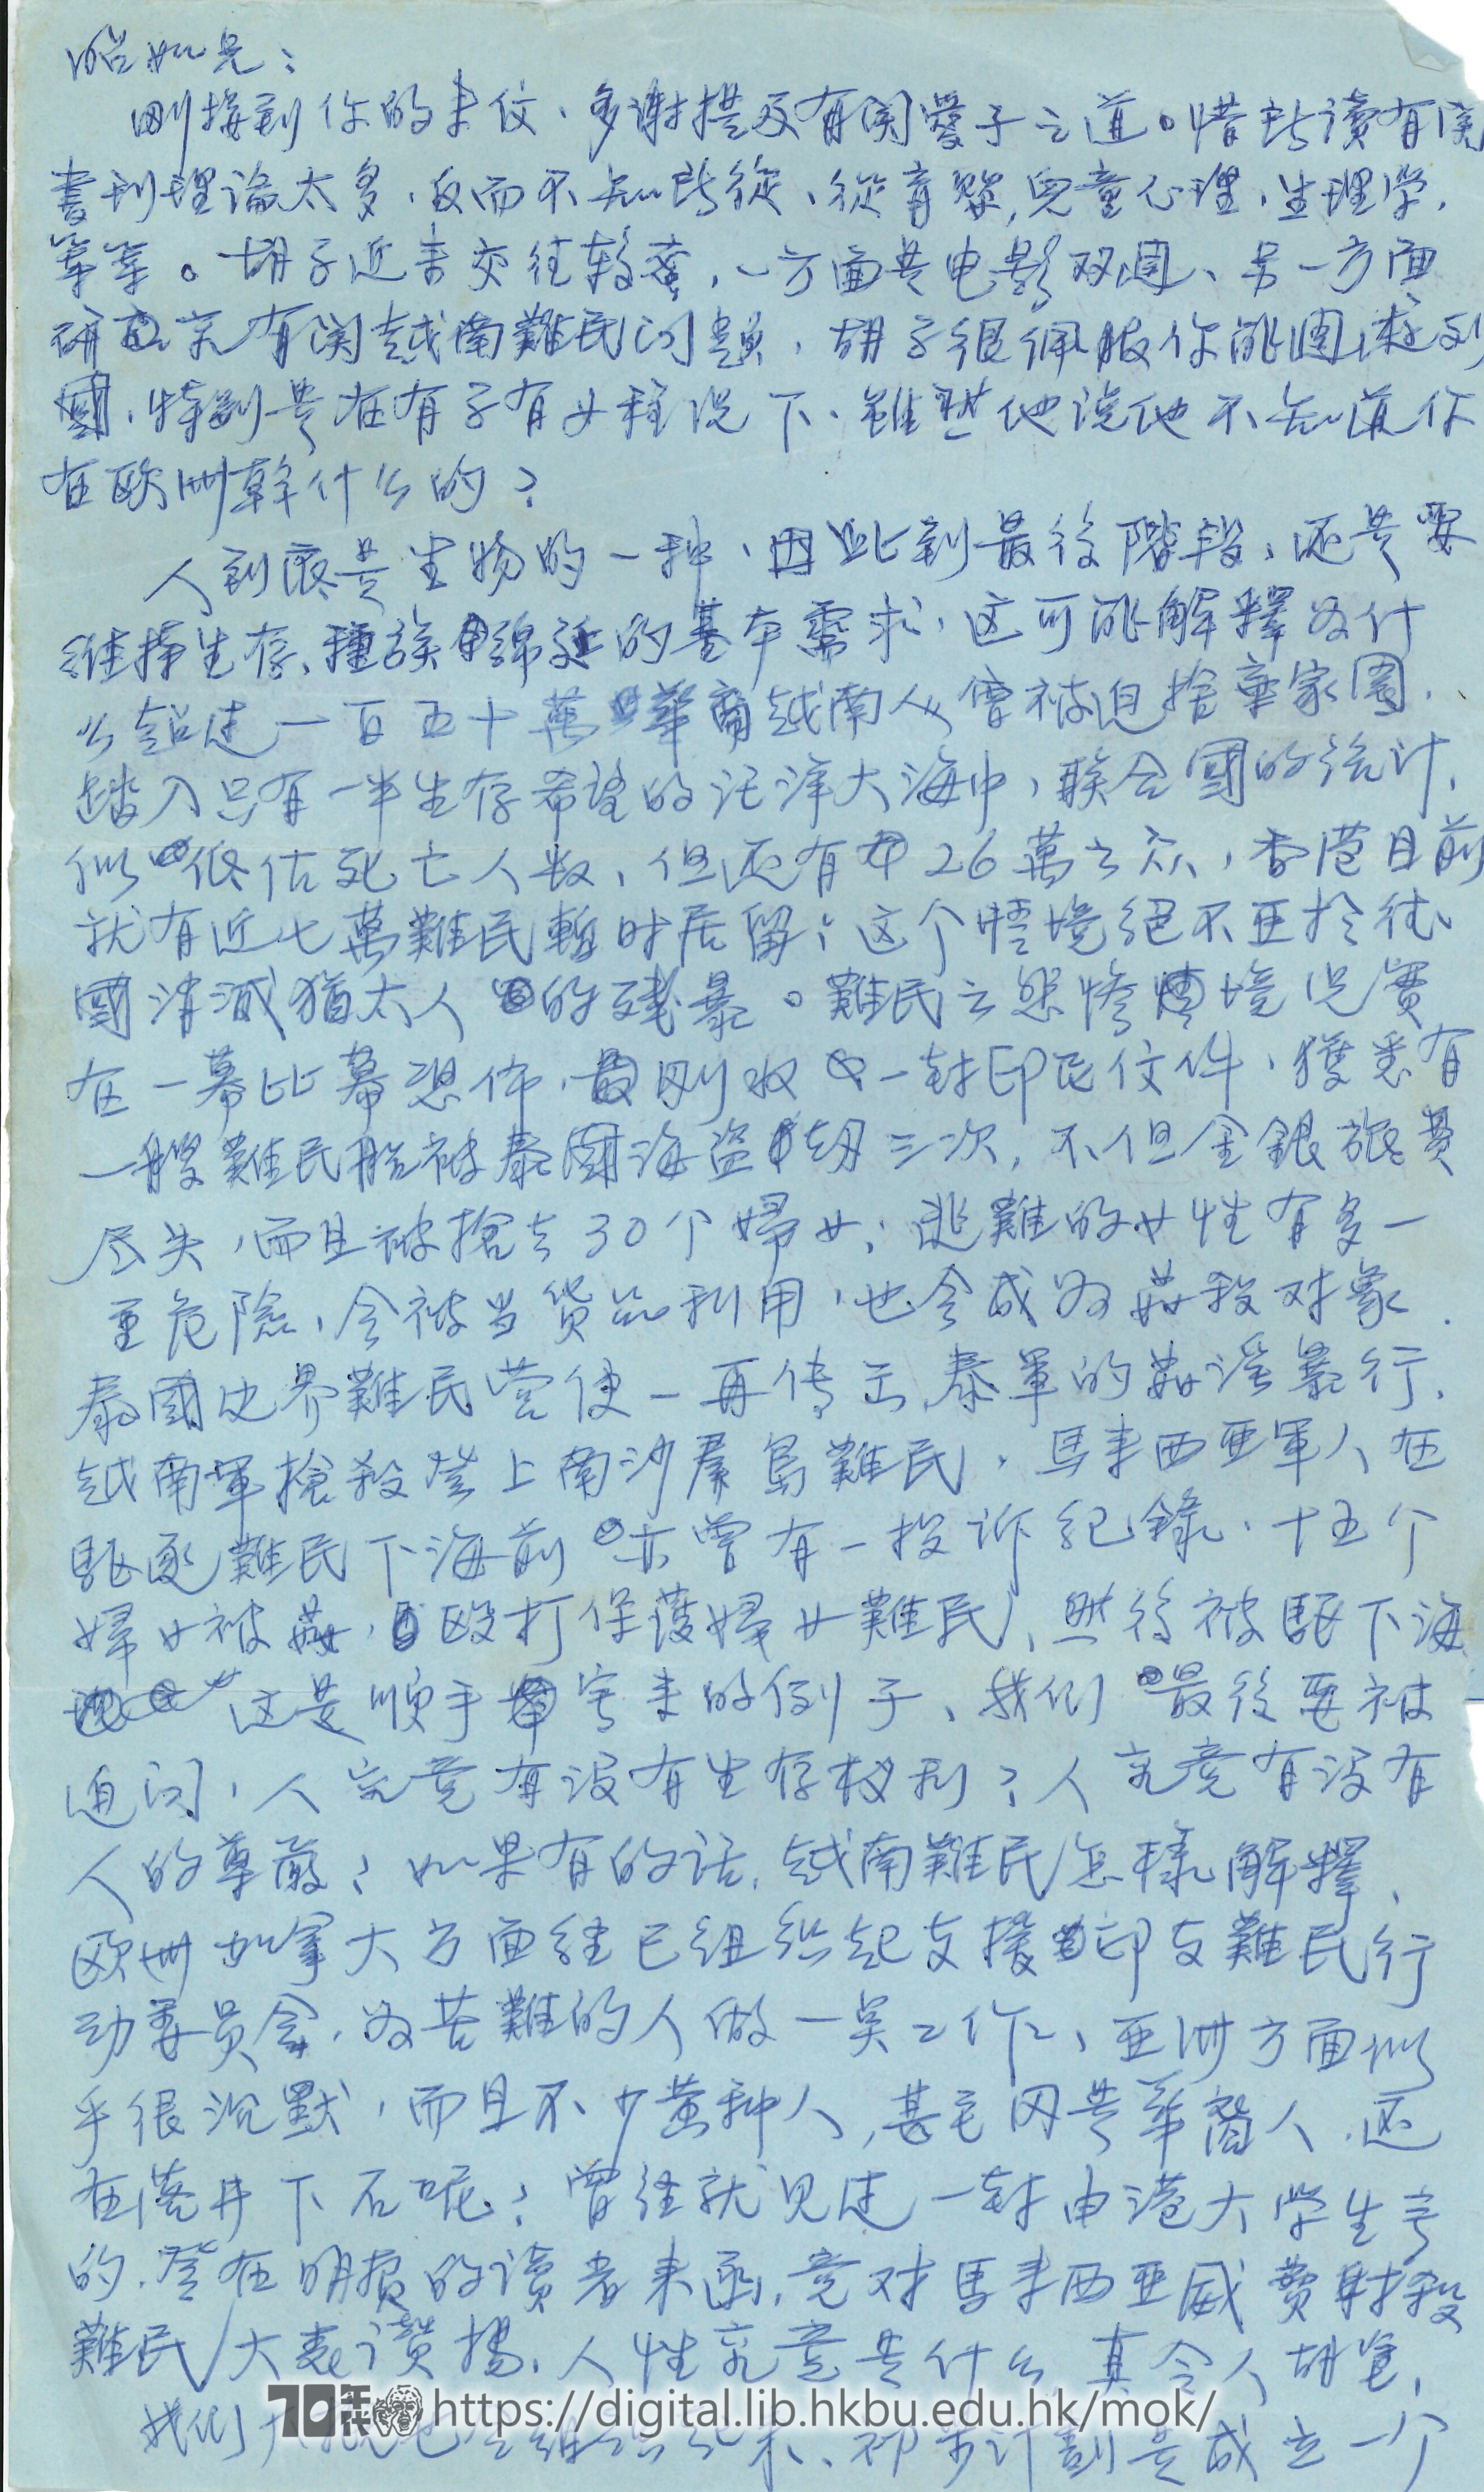   Letter from Chan Ching-wai to Mok Chiu Yu 陳清偉 